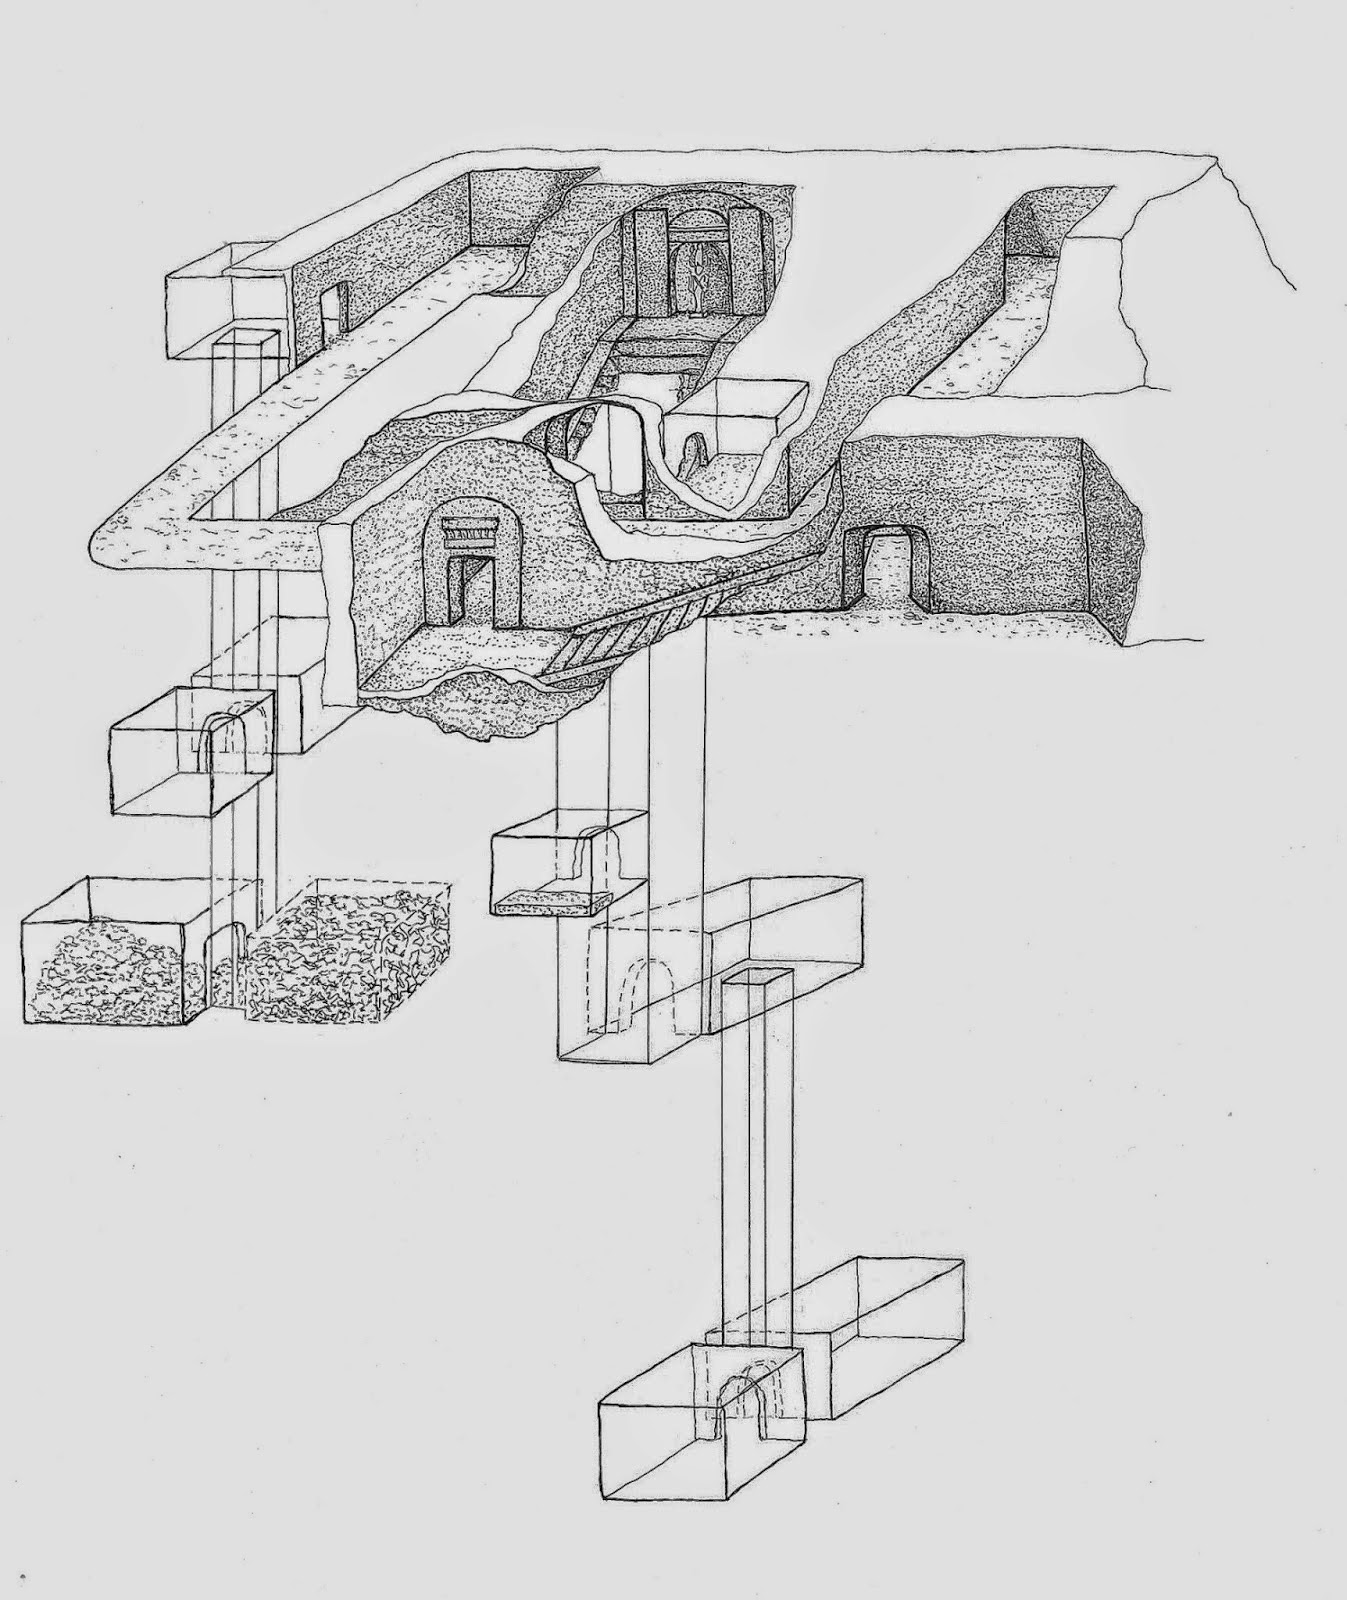 Σκίτσο που δείχνει το περίγραμμα του τάφου του Όσιρι. Σχέδιο της αρχιτεκτονικής του τάφου από τη Raffaella Carrera, MinProject (Αρχαιολογική Αποστολή Κανάρια-Τοσκάνη).